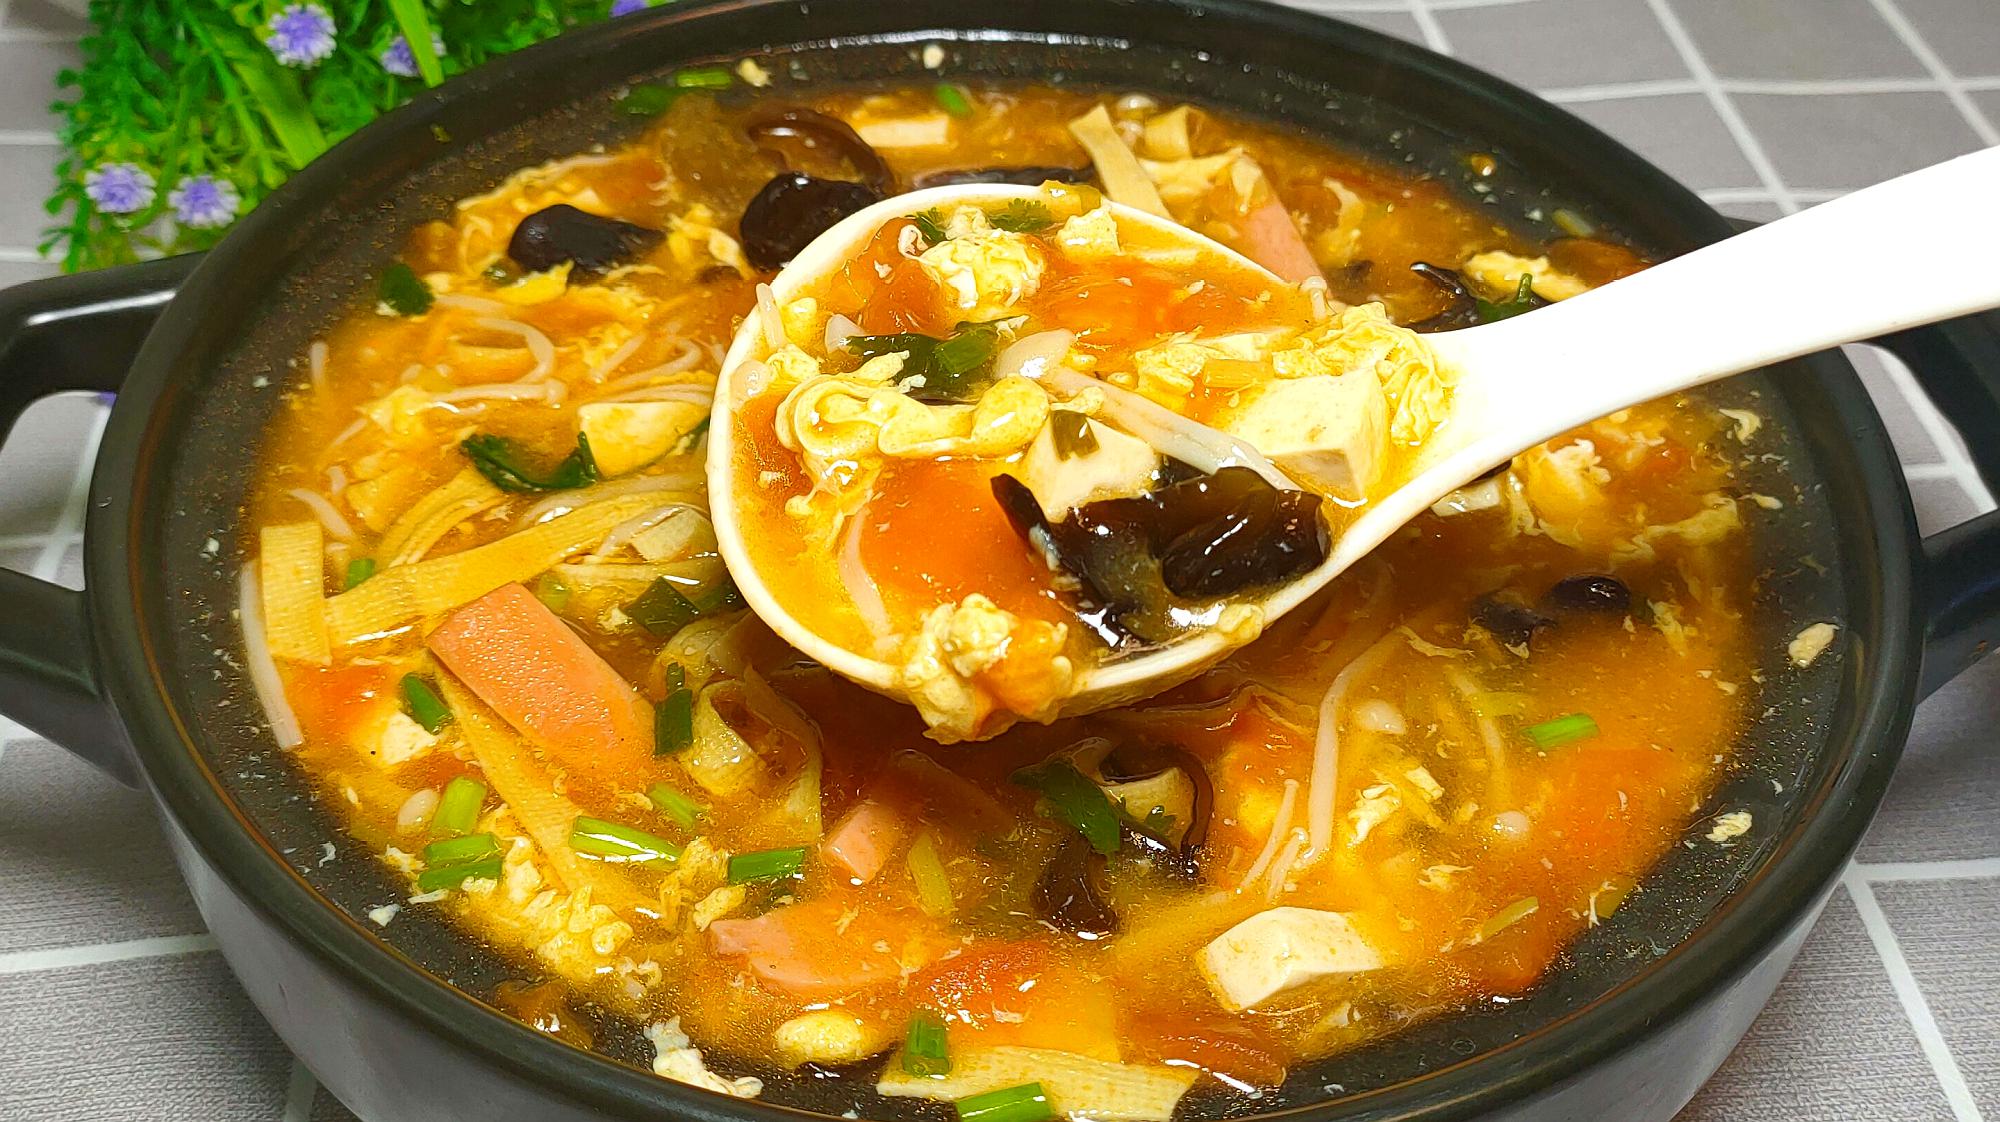 1酸辣汤:大厨分享酸汤小肥羊家常做法,肉质细嫩,酸辣开胃,上桌汤都不